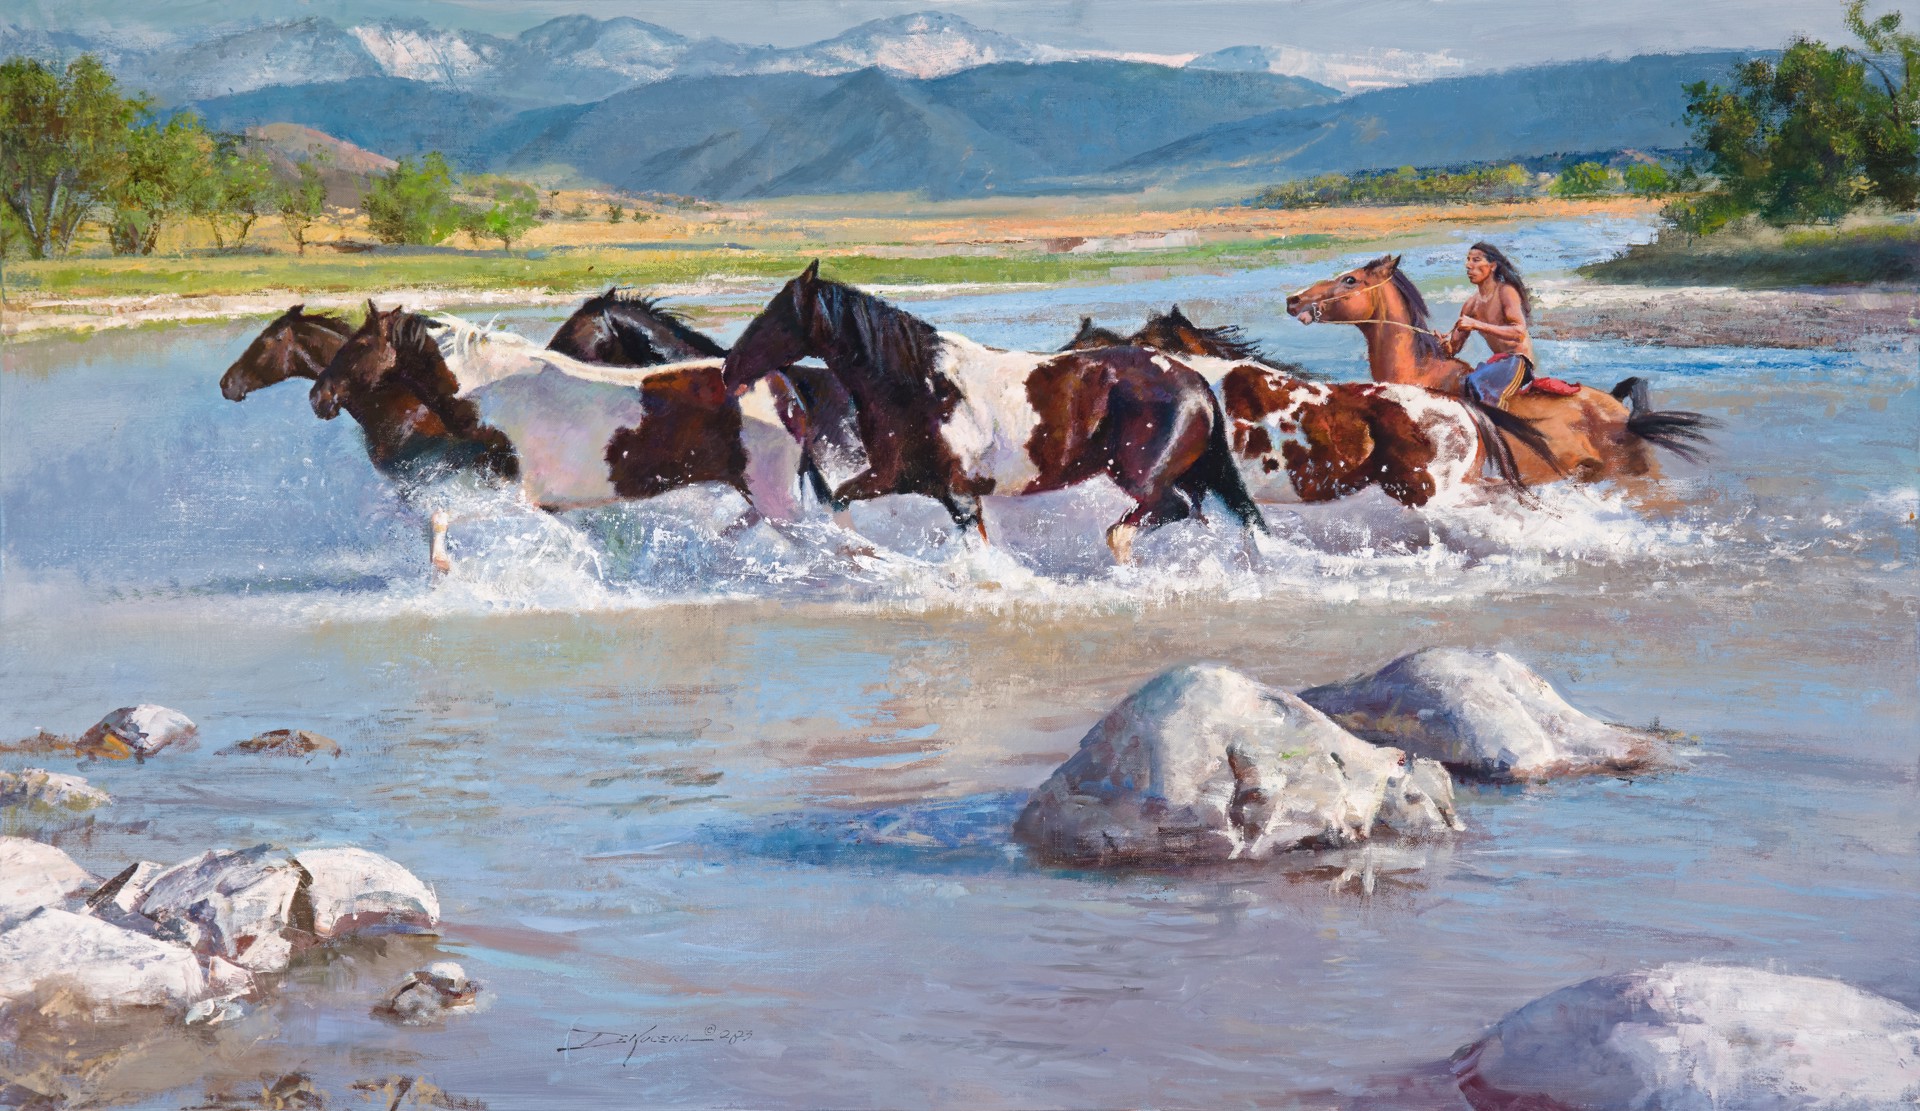 His Many Horses by D. Edward Kucera